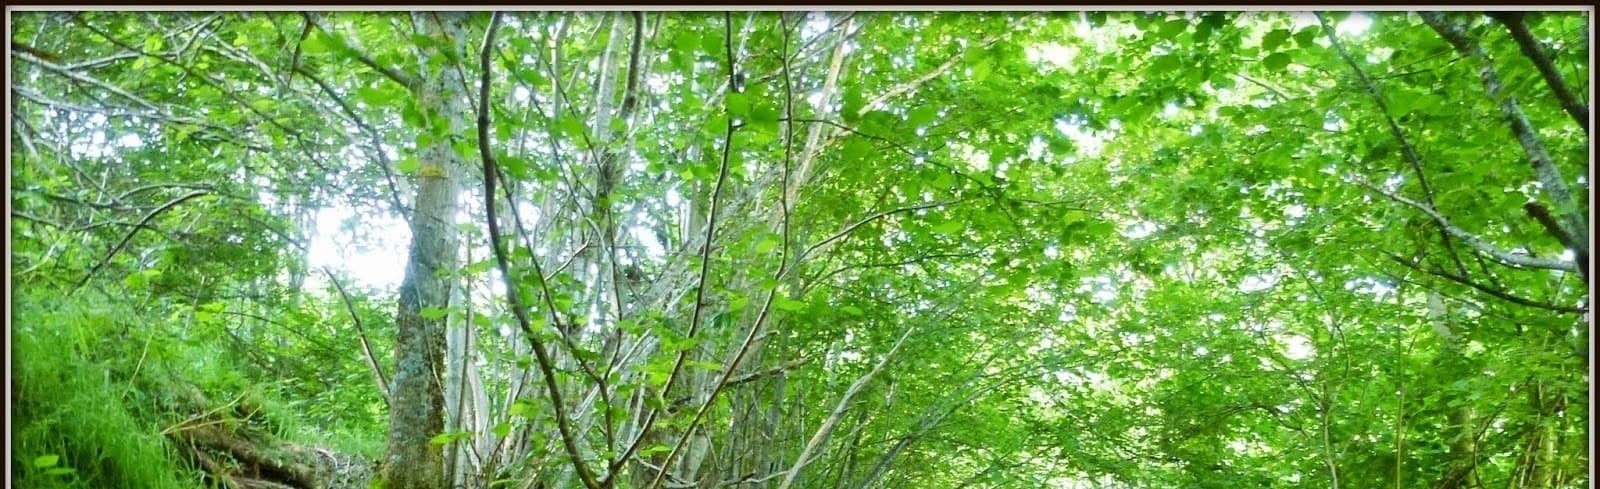 un bosque lleno de árboles y hojas verdes